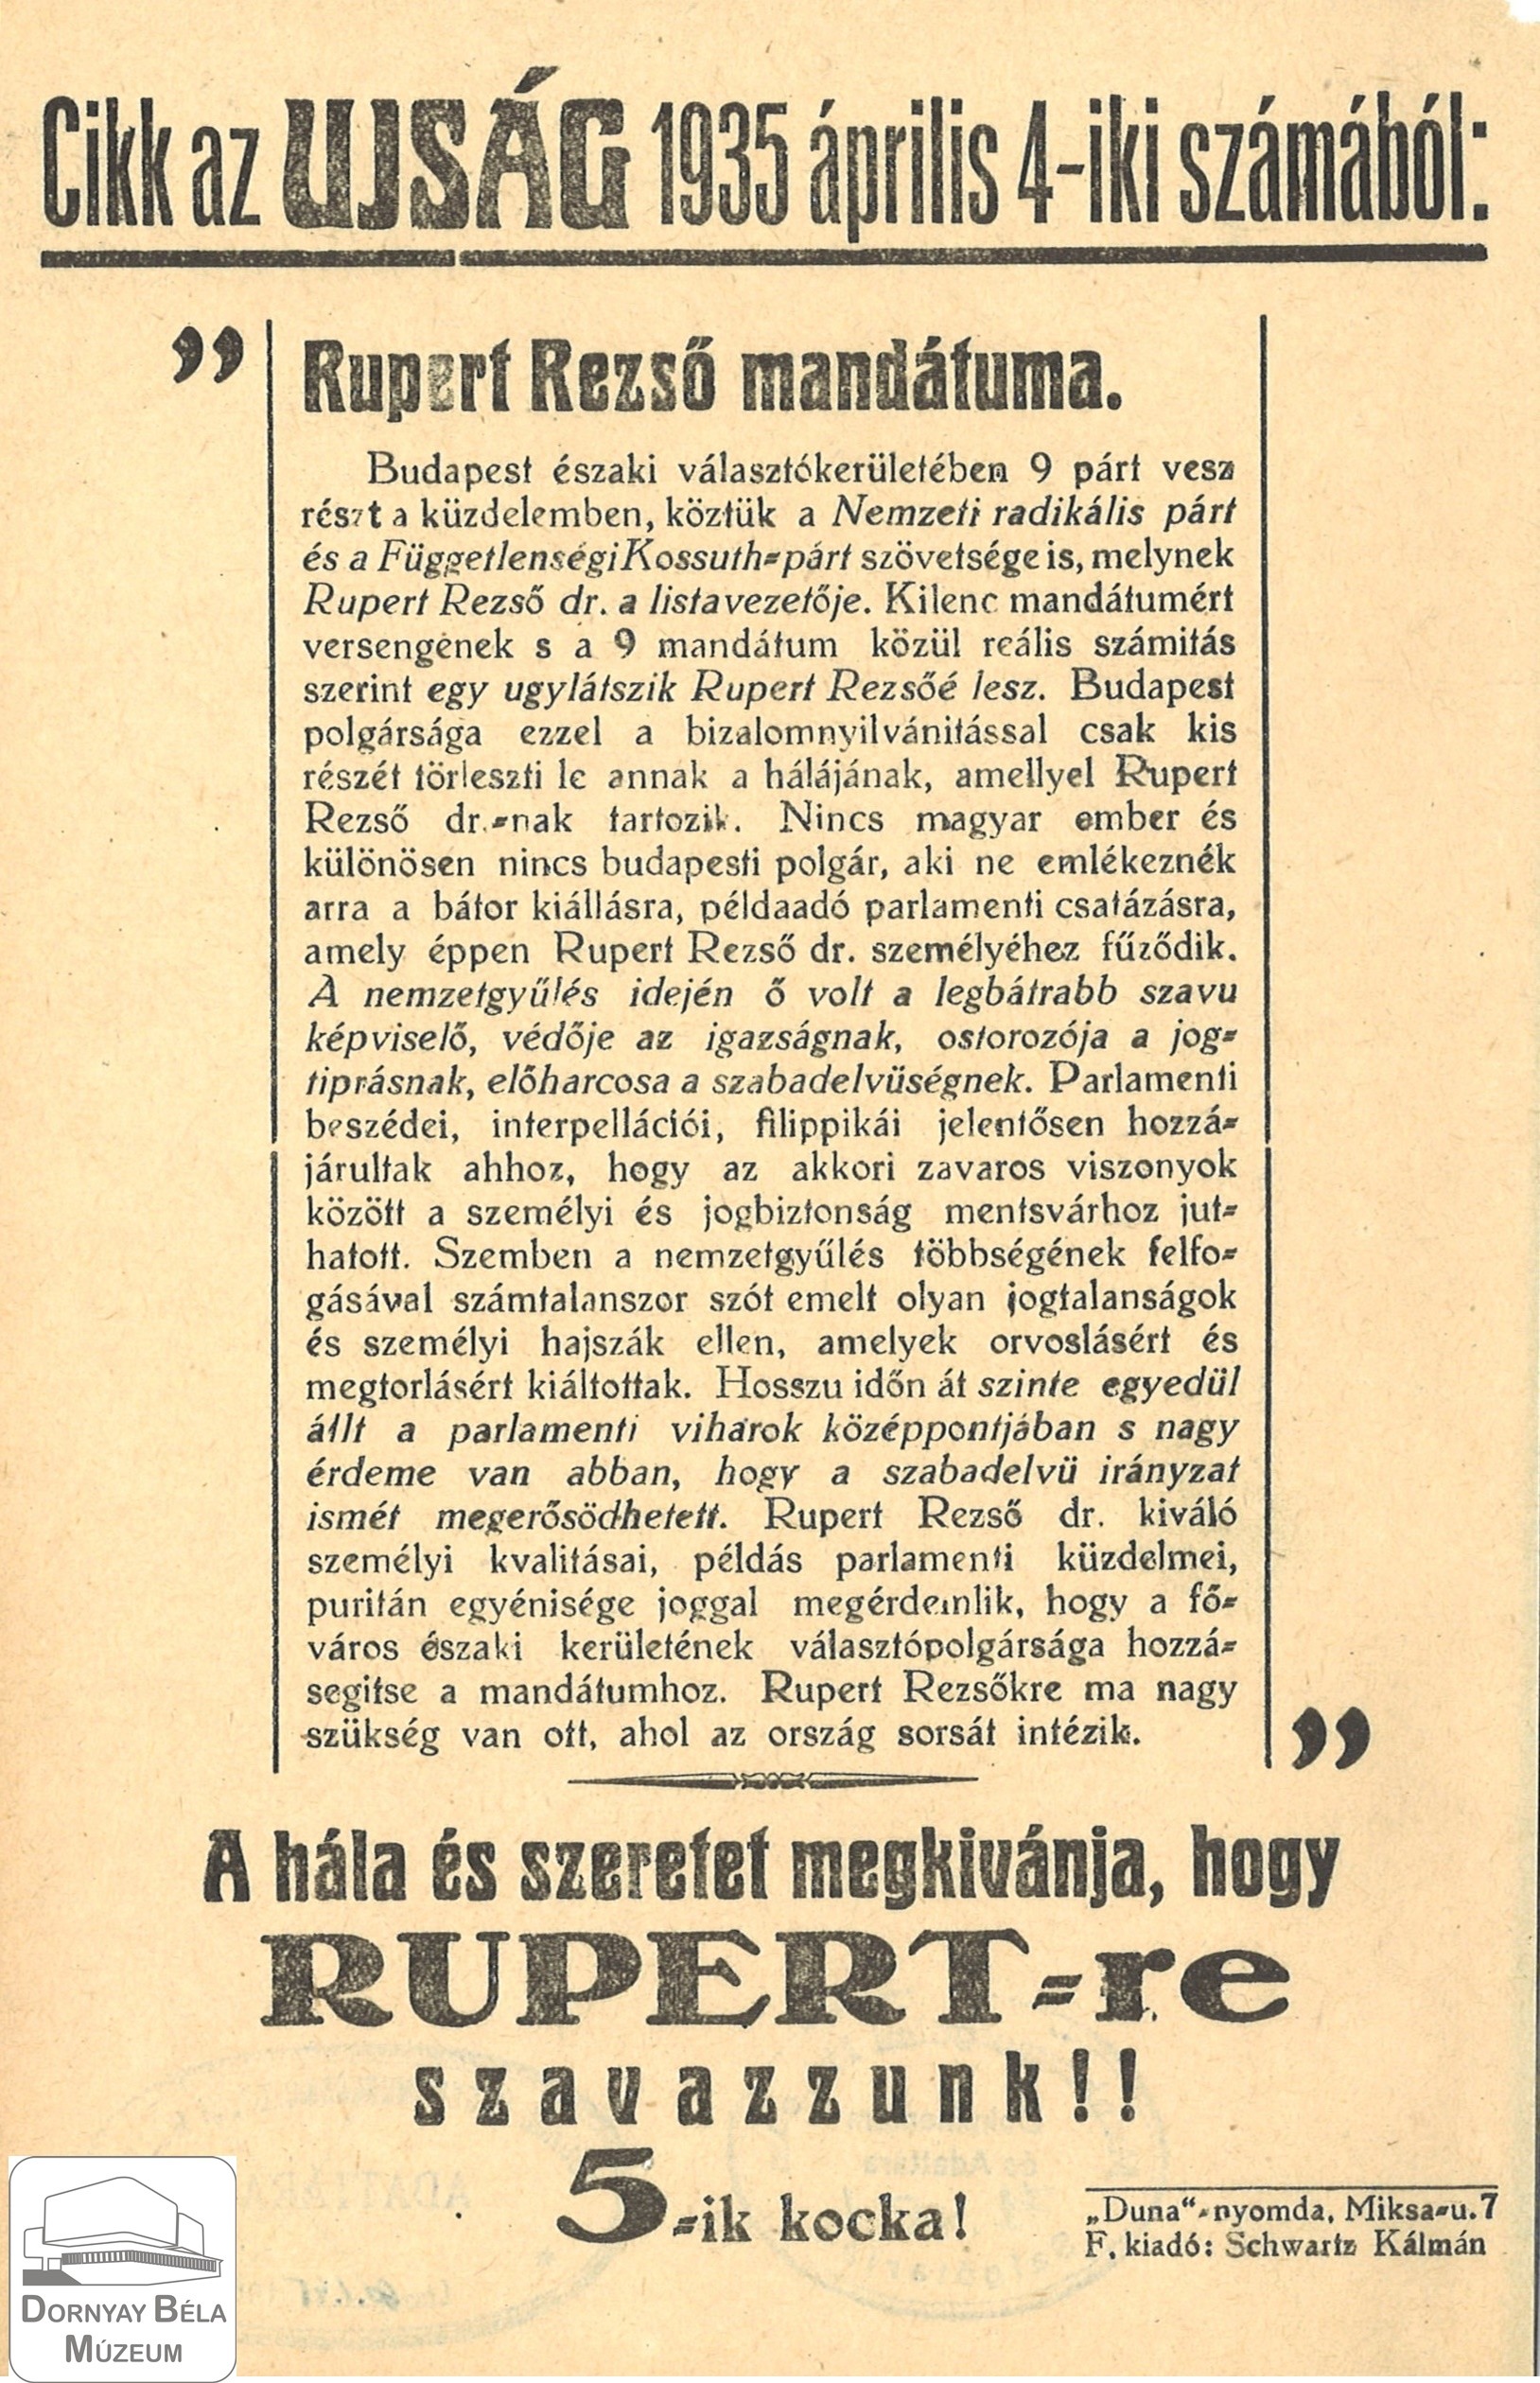 Választási röpirat, cikk az Ujság 1935. ápr. 4-i számából (Dornyay Béla Múzeum, Salgótarján CC BY-NC-SA)